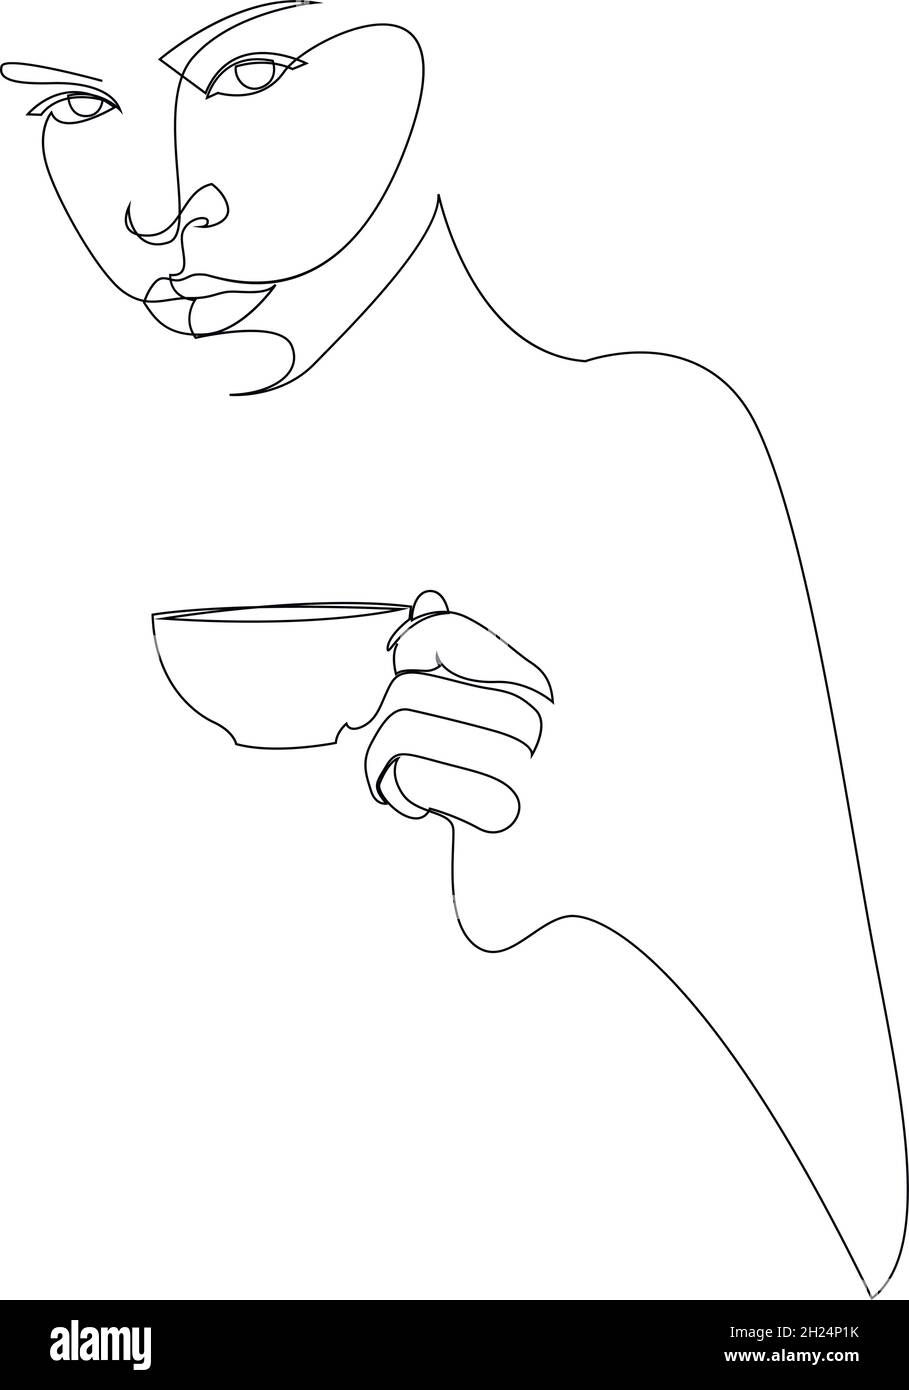 Disegno continuo su una linea. Ritratto astratto primo piano di bella giovane donna con una tazza di tè o caffè. Illustrazione vettoriale Illustrazione Vettoriale